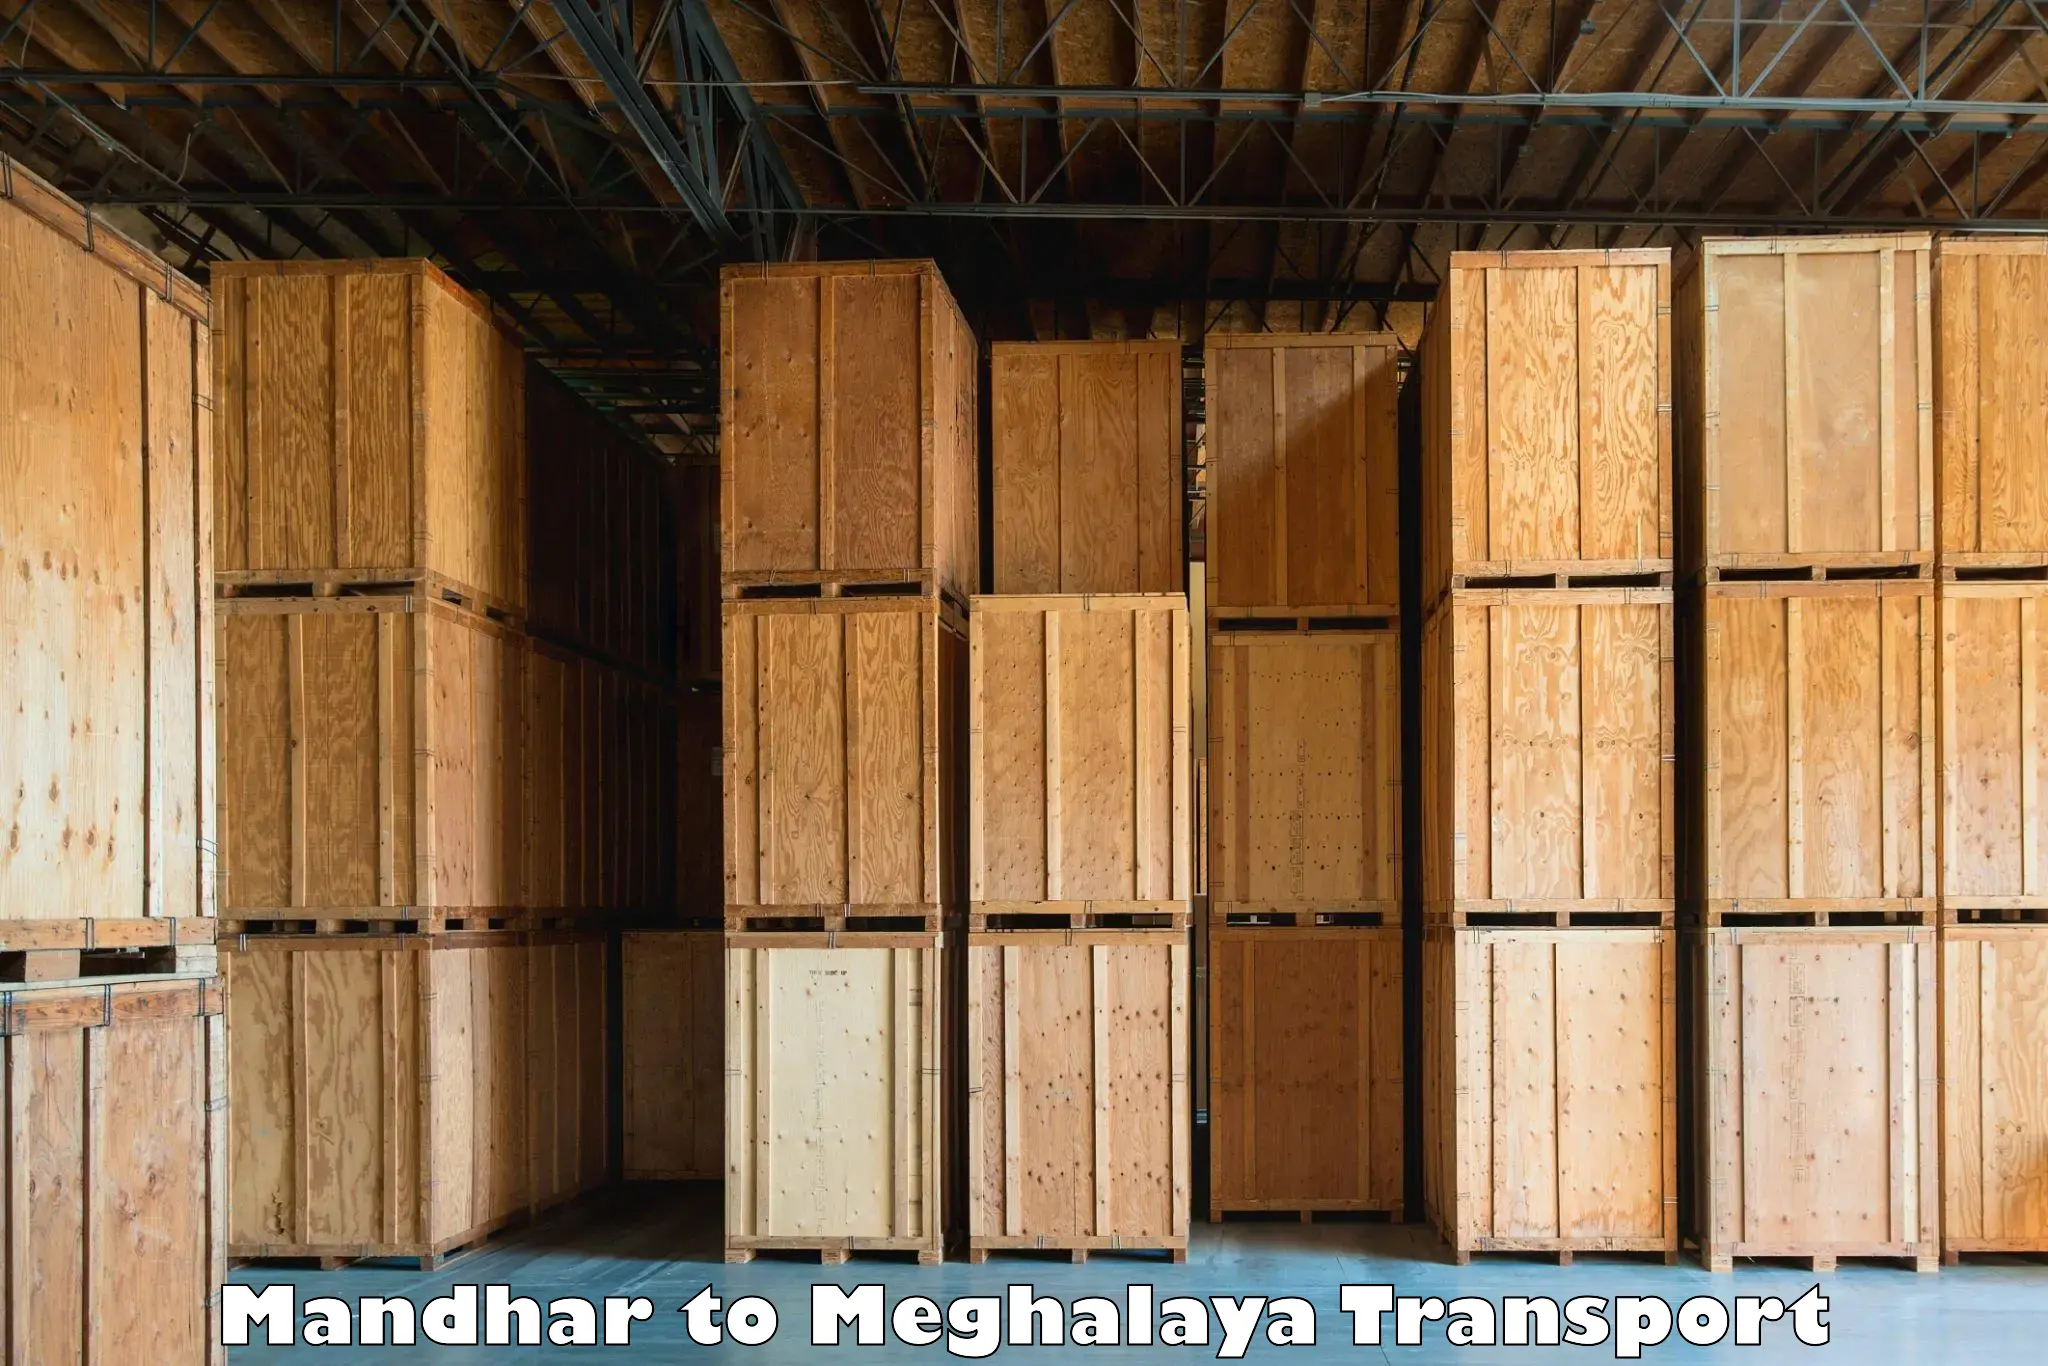 Cycle transportation service Mandhar to Meghalaya